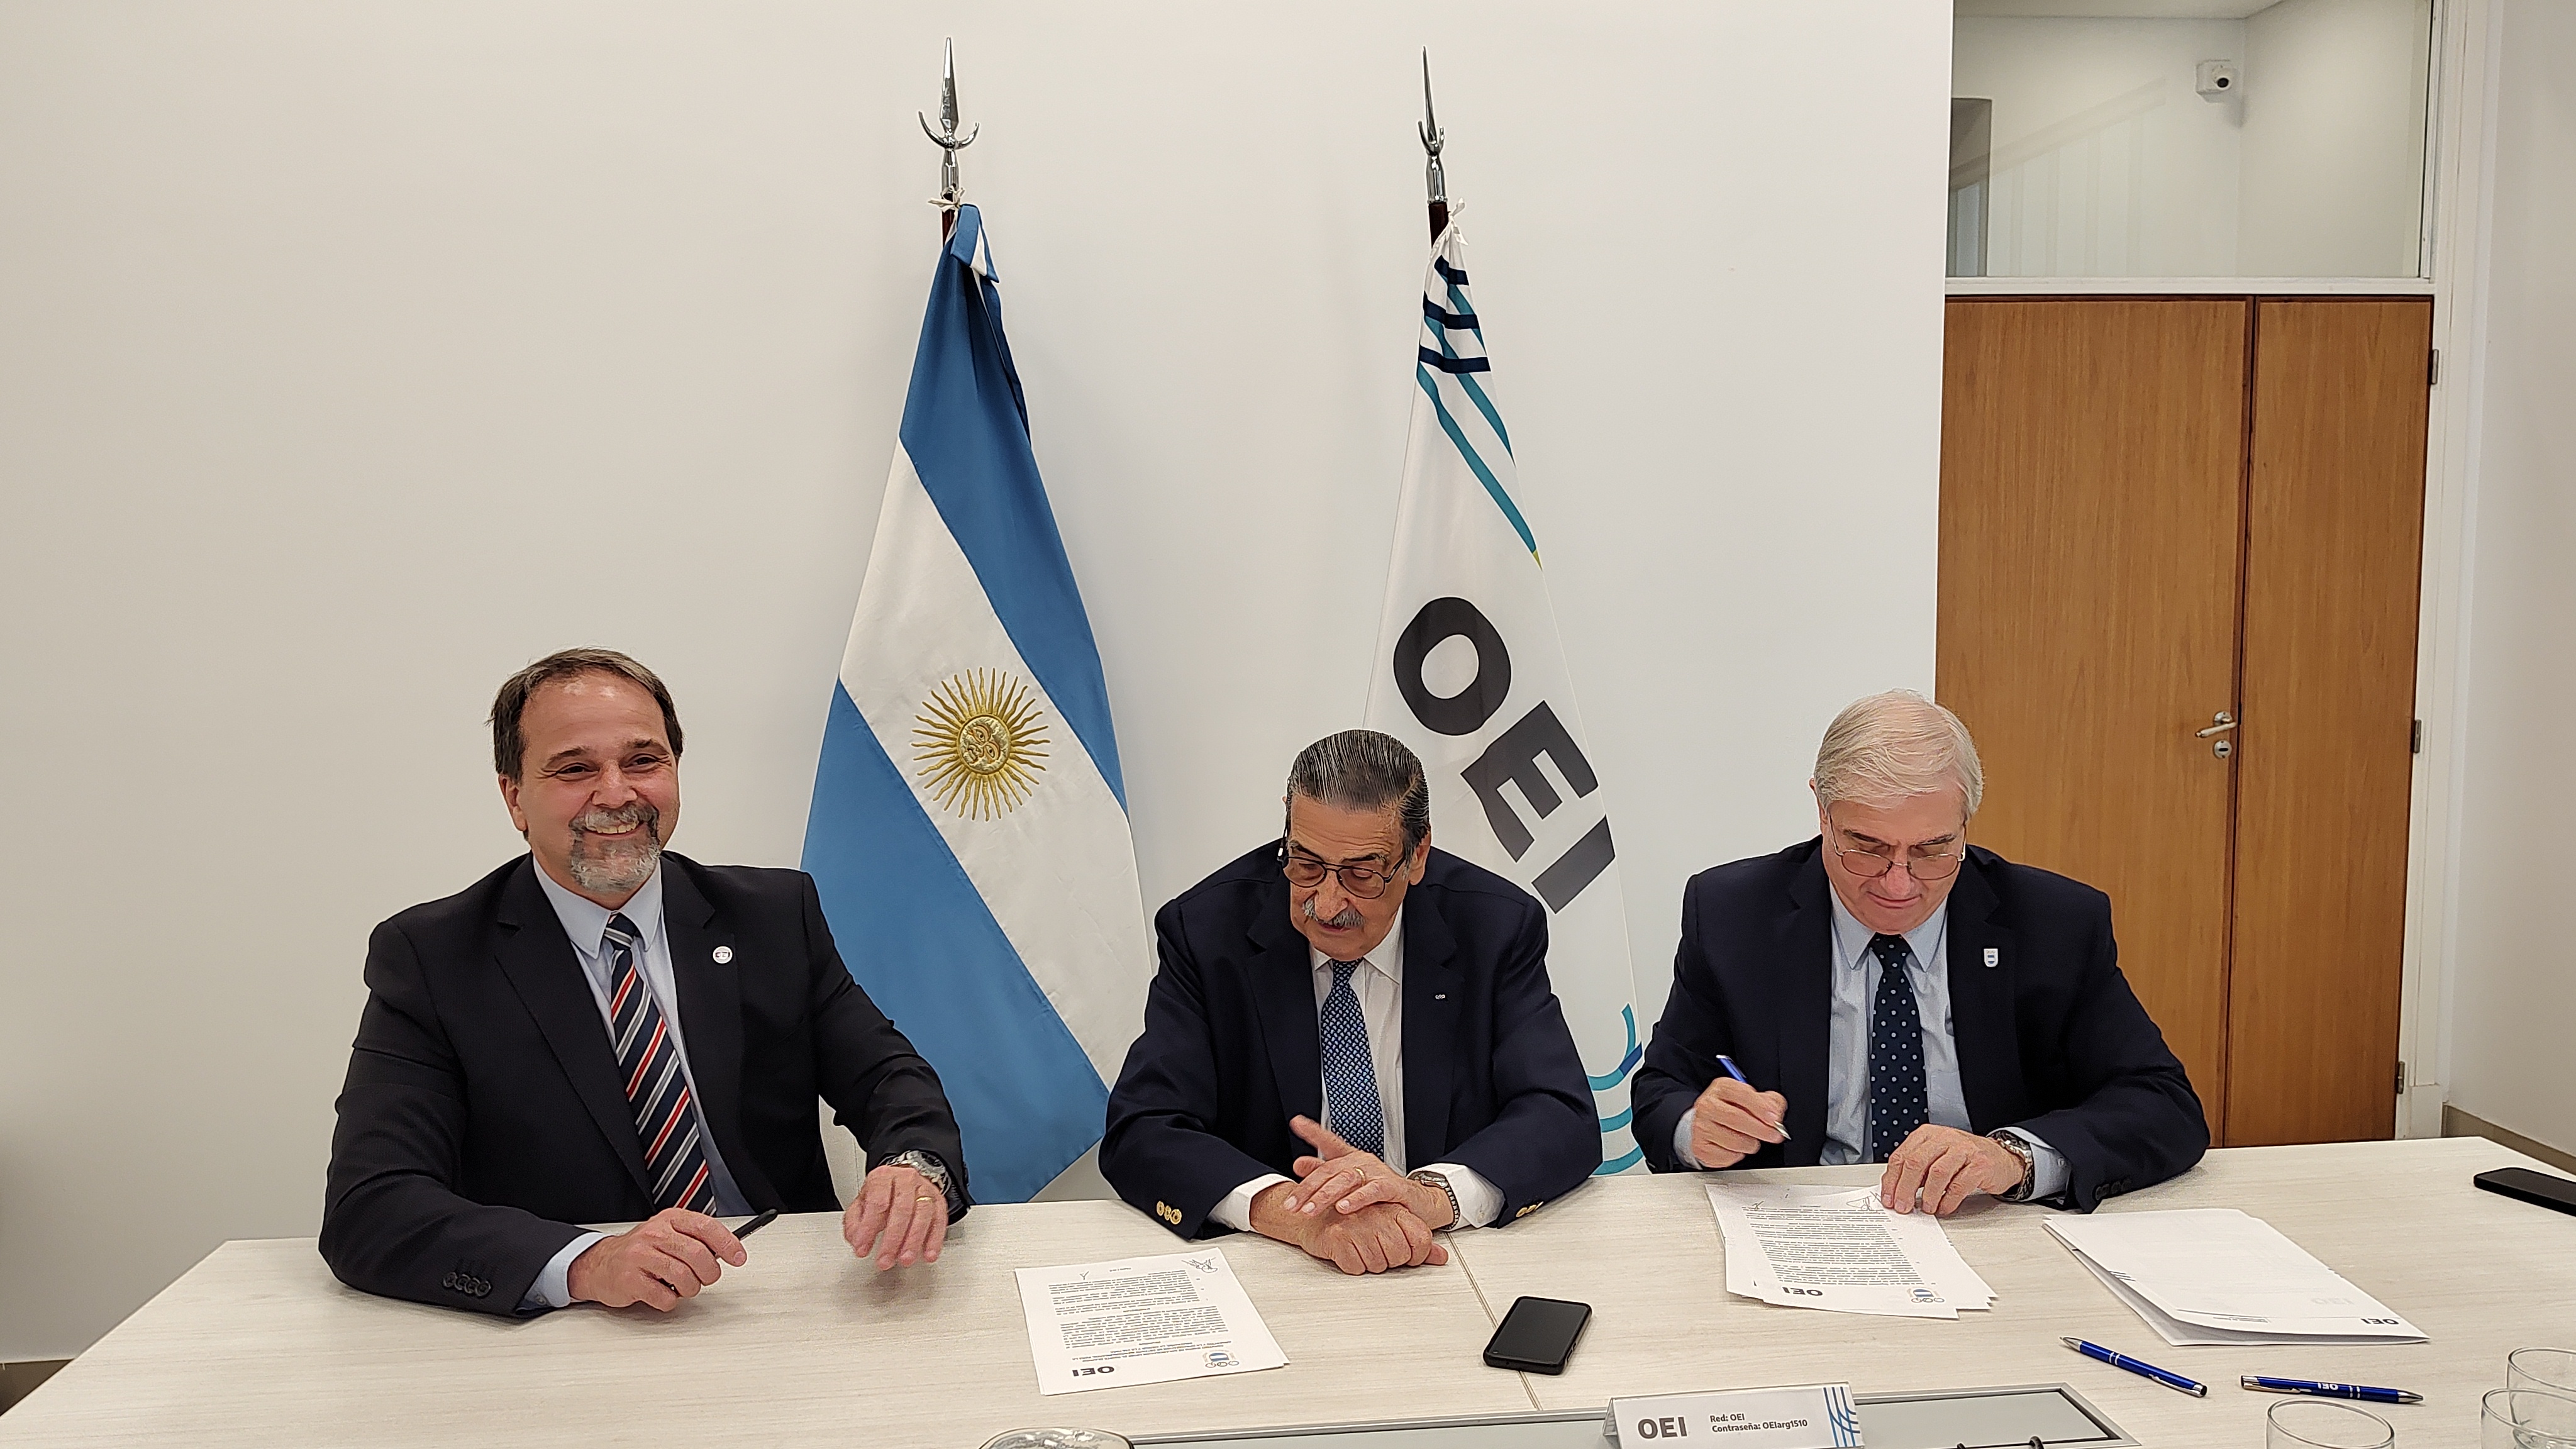 El Comité Olímpico Argentino se une a la OEI para avanzar en acciones de cooperación